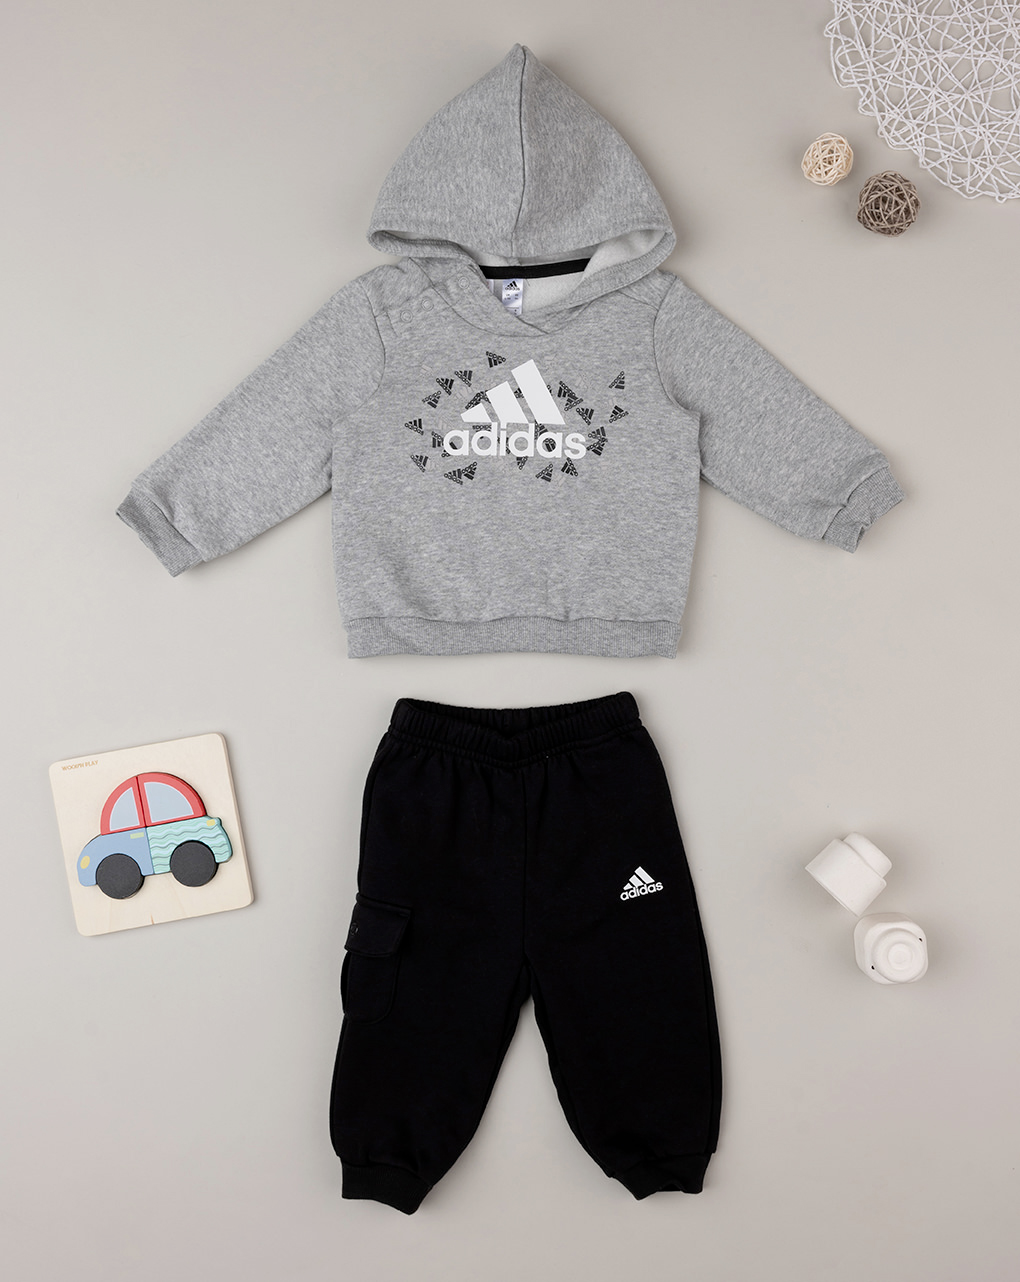 Adidas αθλητικό σετ φούτερ και φόρμα hu1555 για αγόρι - Adidas